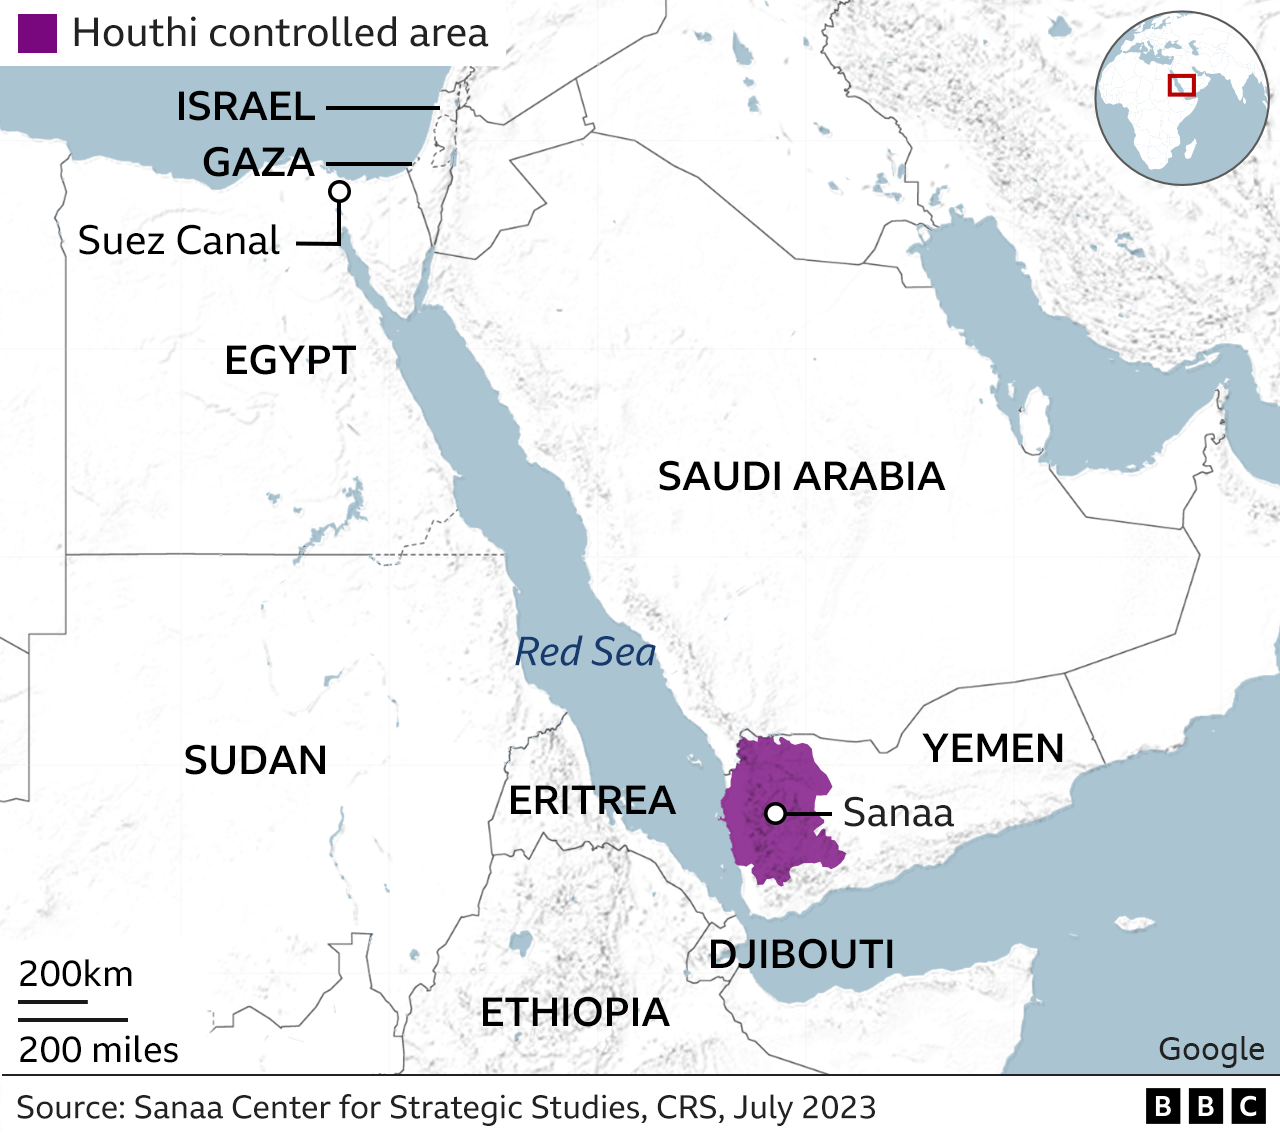 US and UK strikes target Houthi rebels in Yemen - BBC News